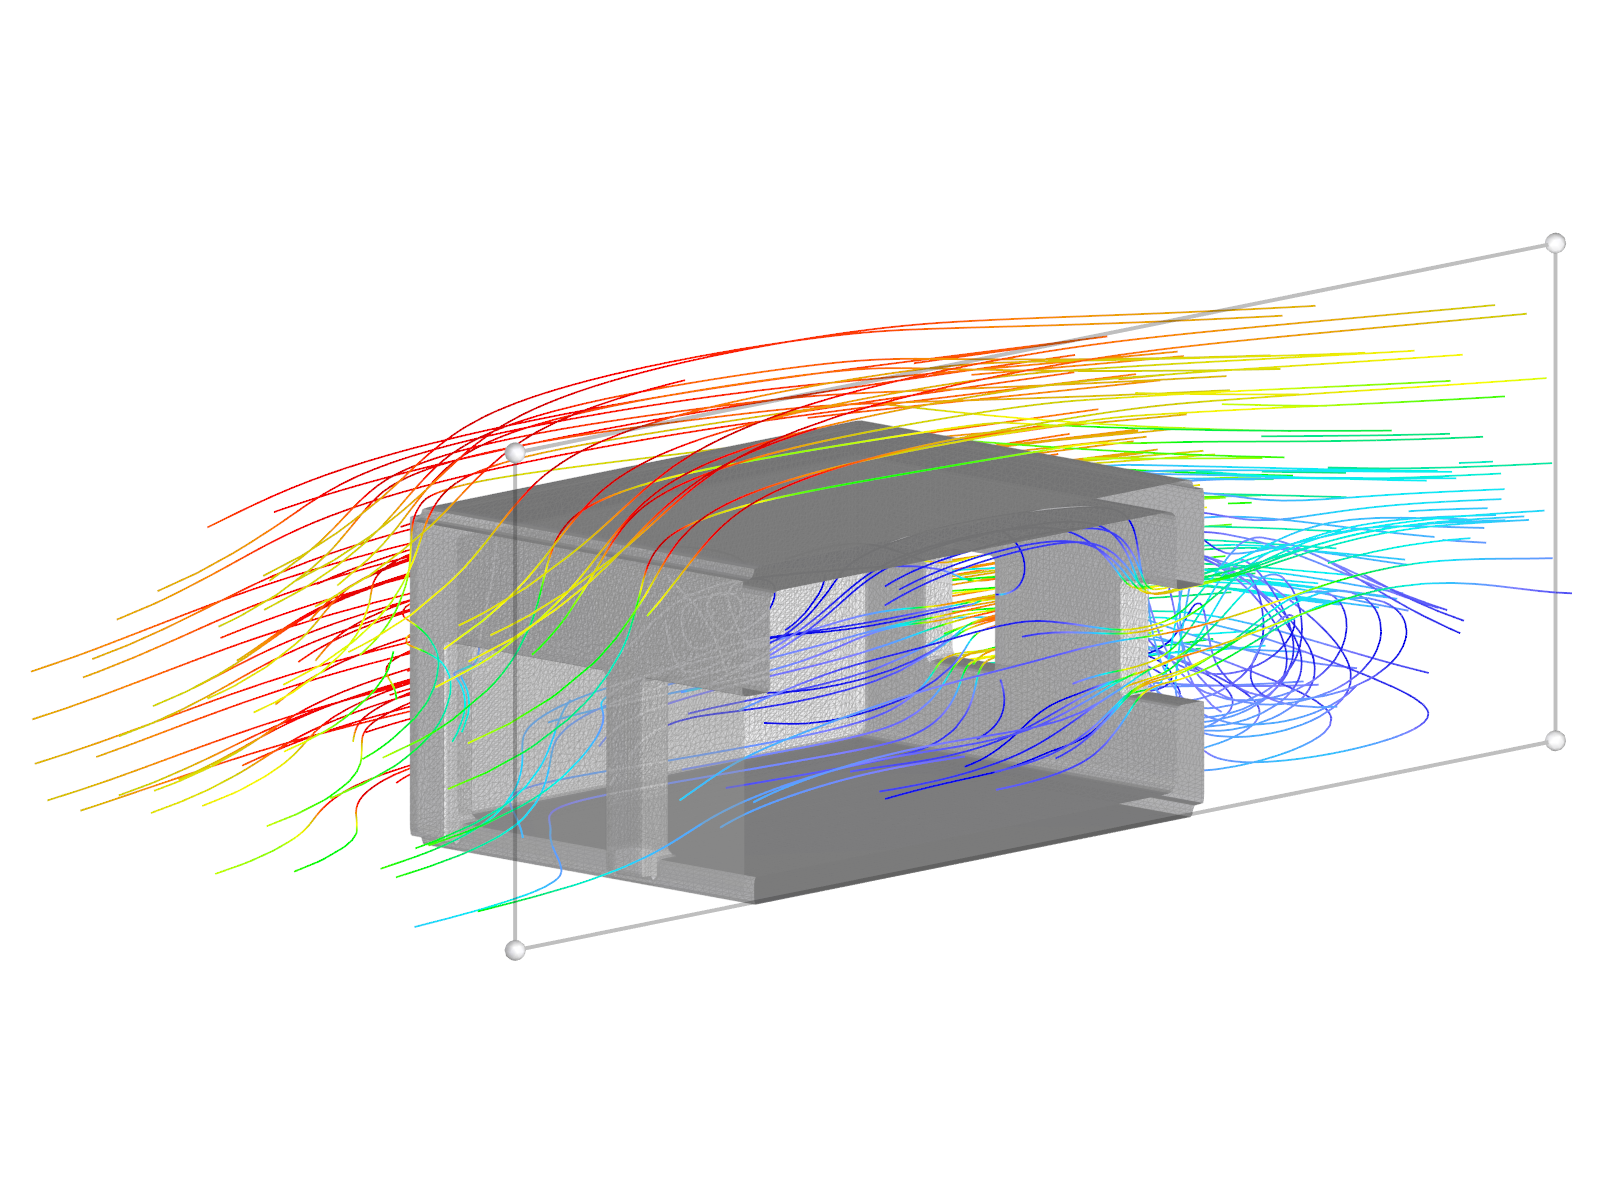 Modelo de garagem com superfície parcialmente permeável ao vento